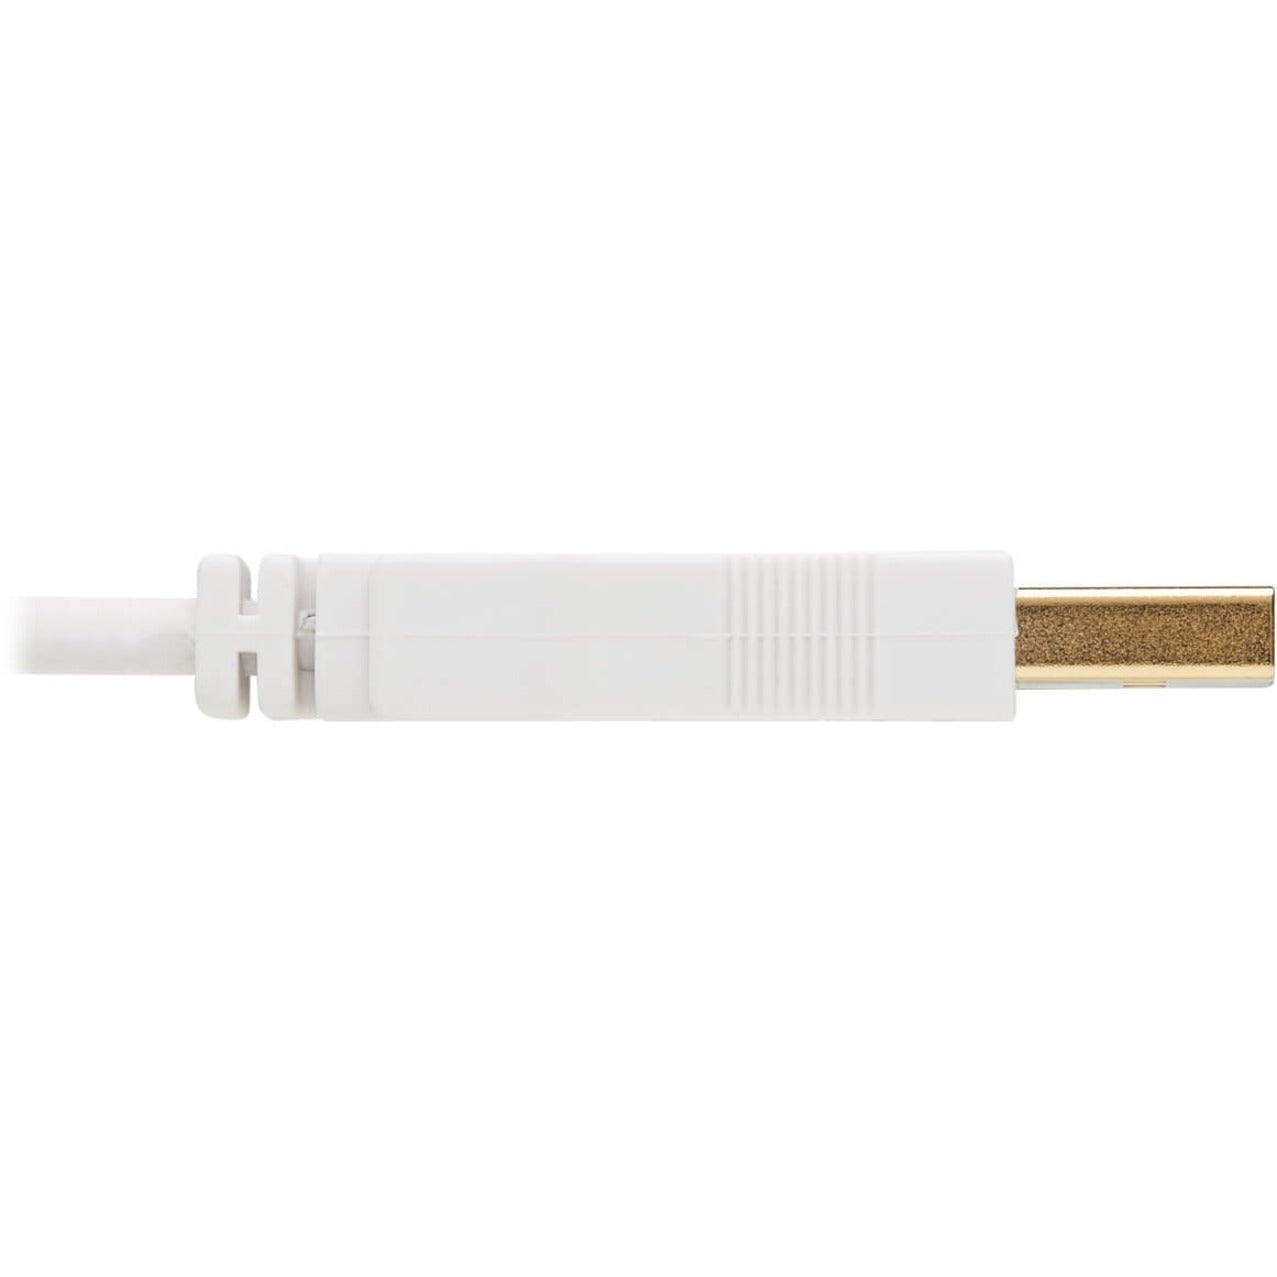 Tripp Lite U030AB-006-WH USB-A to USB Mini-B Antibacterial Cable (M/M), USB 2.0, White, 6-ft. (1.83 m)